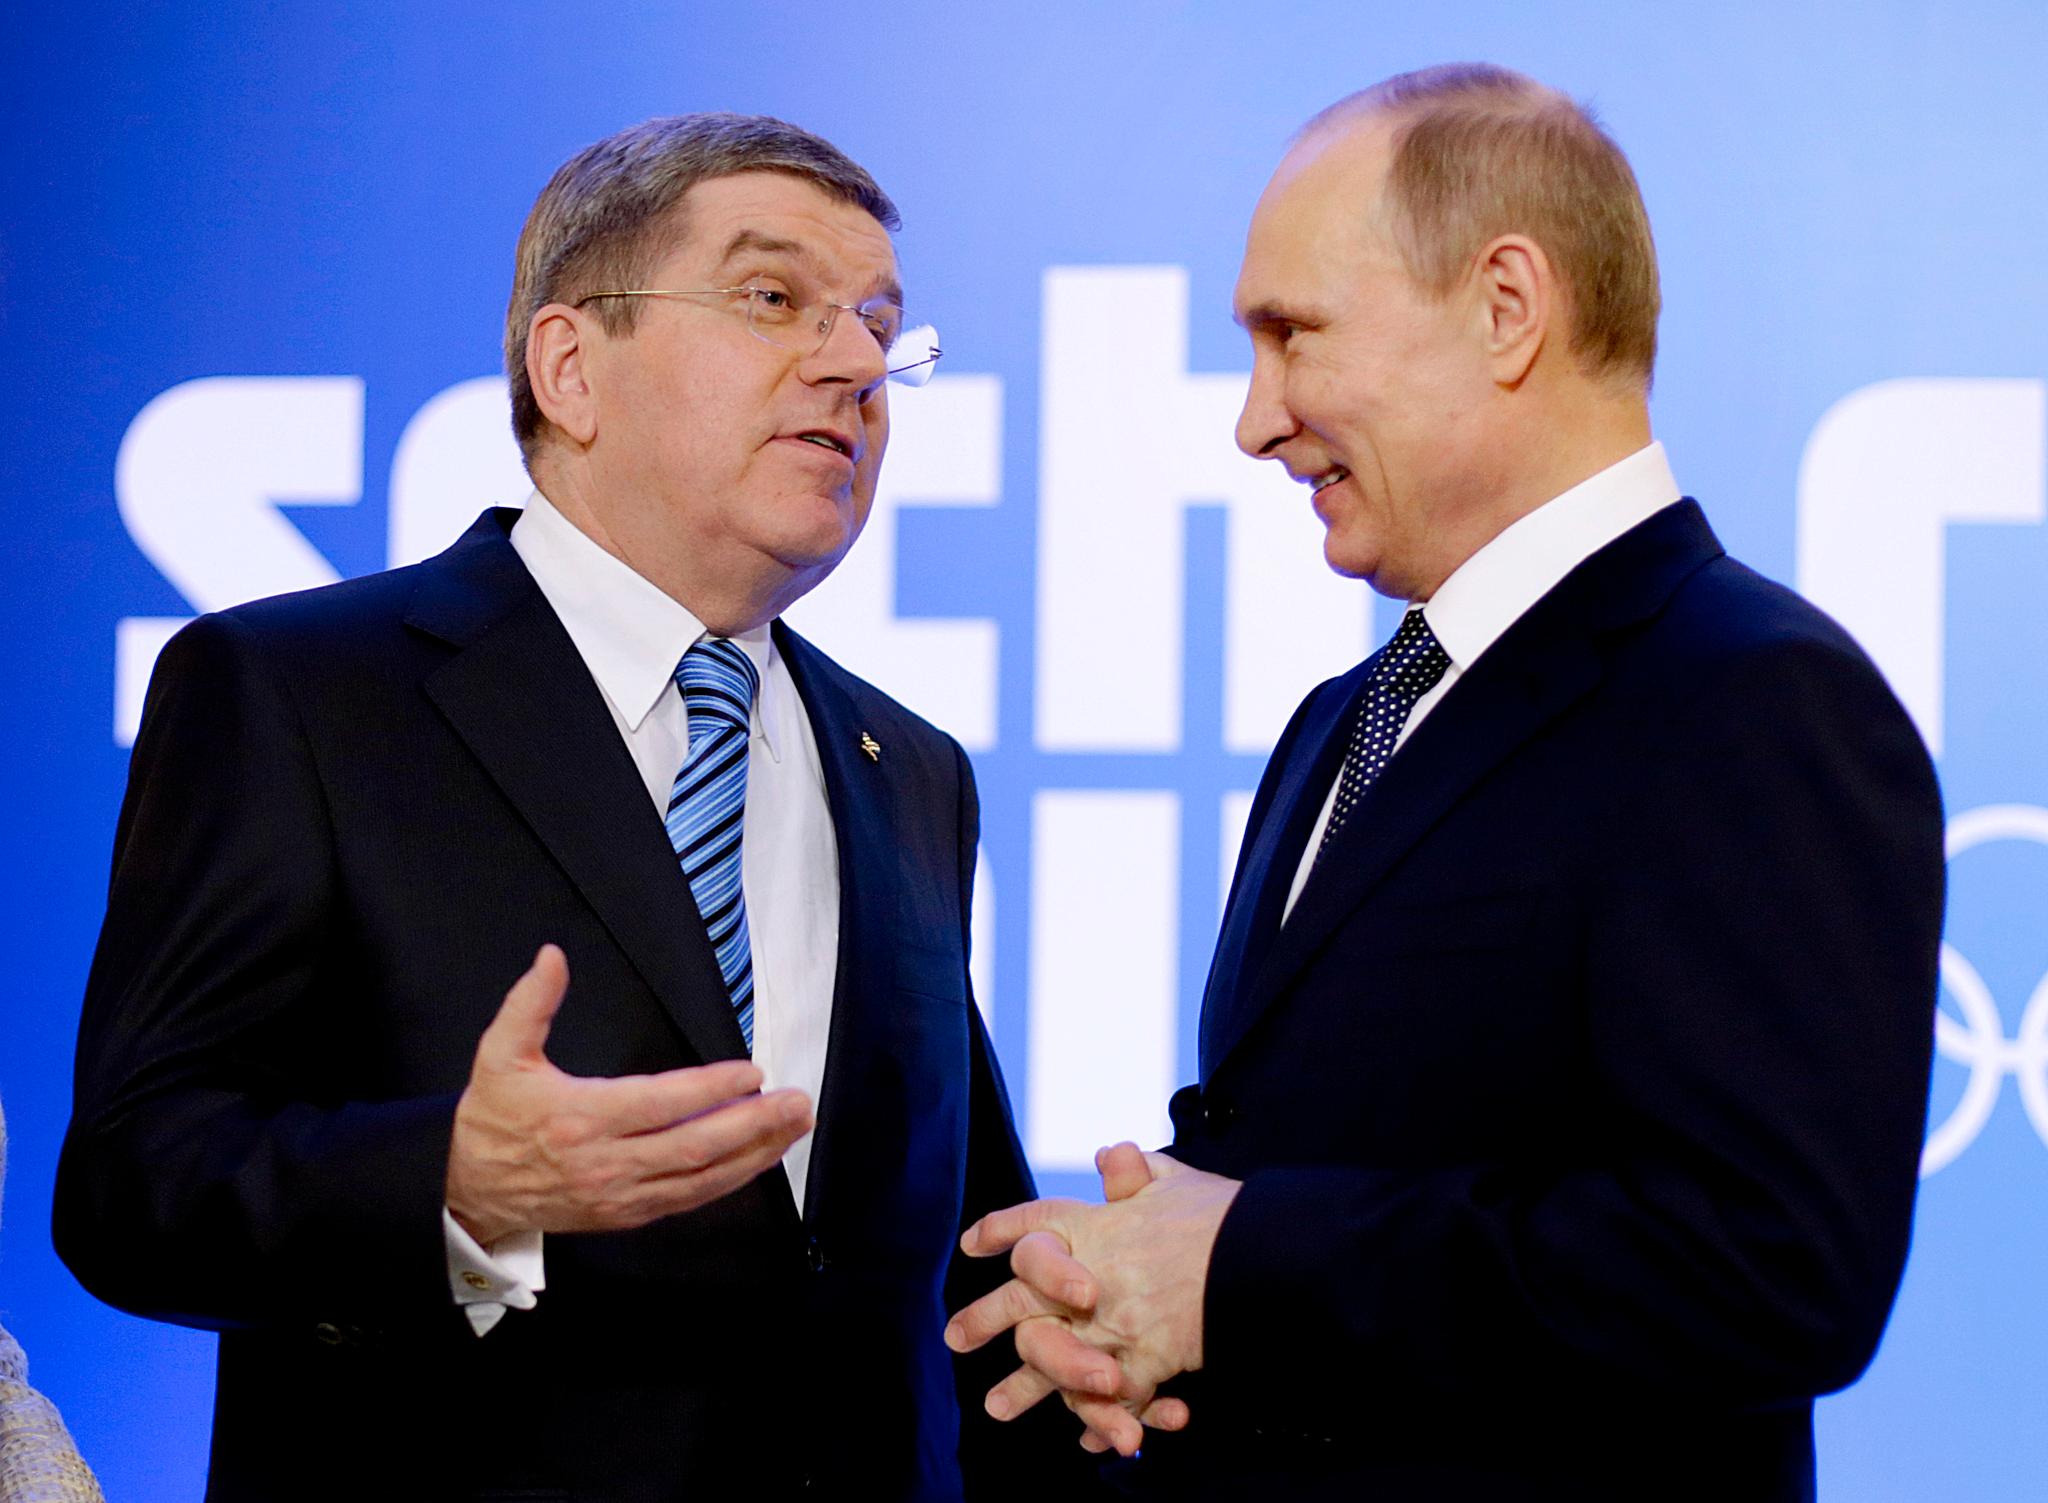 PRESIDENTER: IOC-Bach har møtt Russlands overhode Vladimir Putin flere ganger, blant annet under OL i Sotsji i 2014.